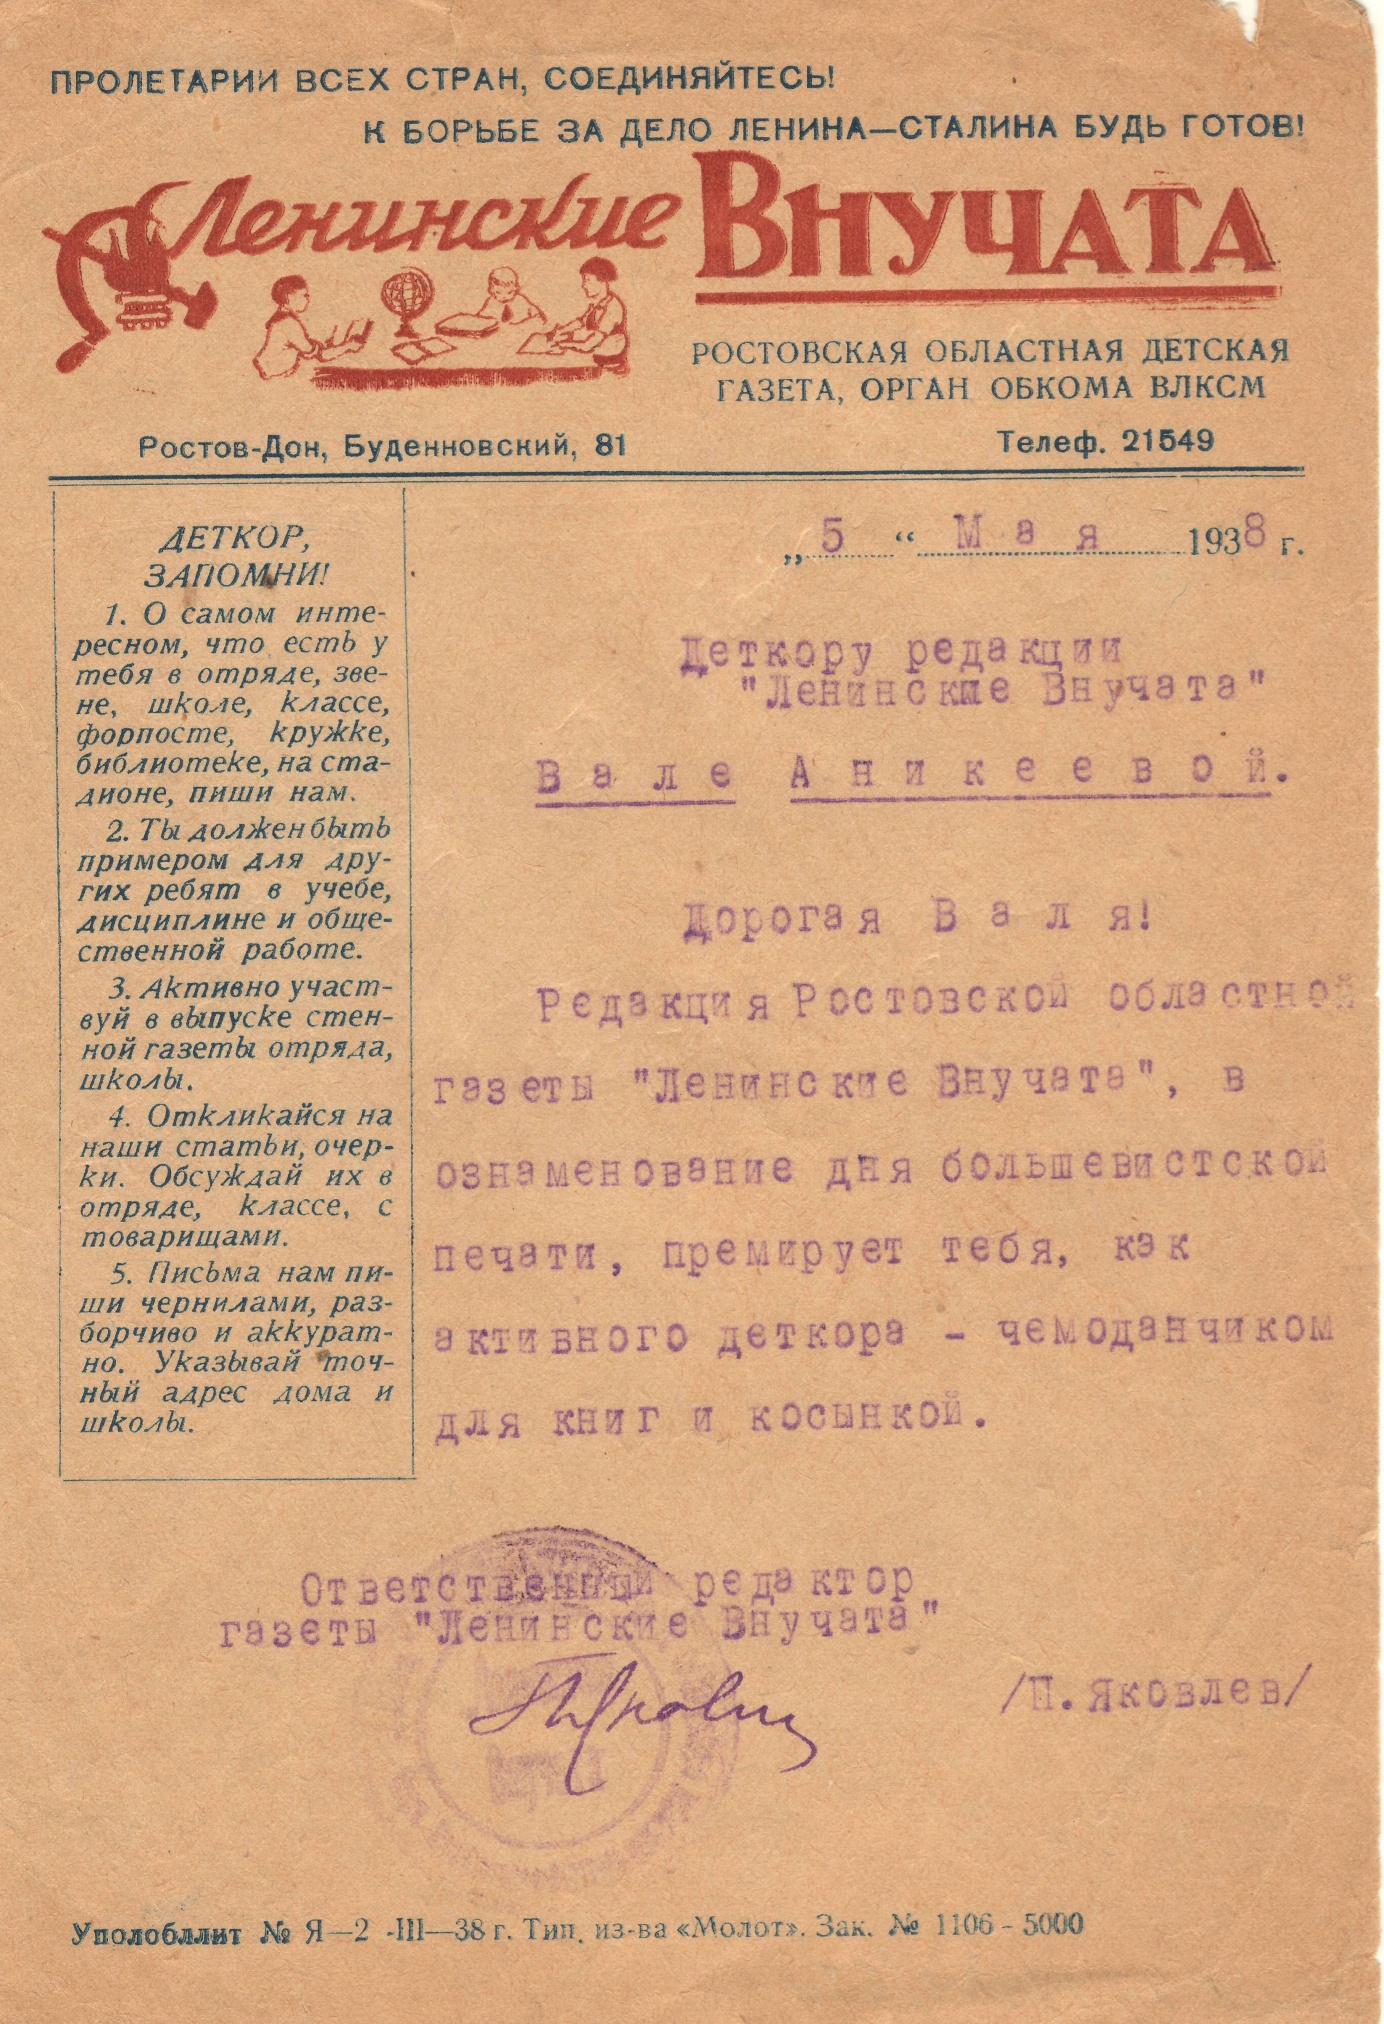 Письмо от редакции детской областной газеты «Ленинские Внучата» Вале Аникеевой. Подписано П.Н. Яковлевым. 5 мая 1938 года.